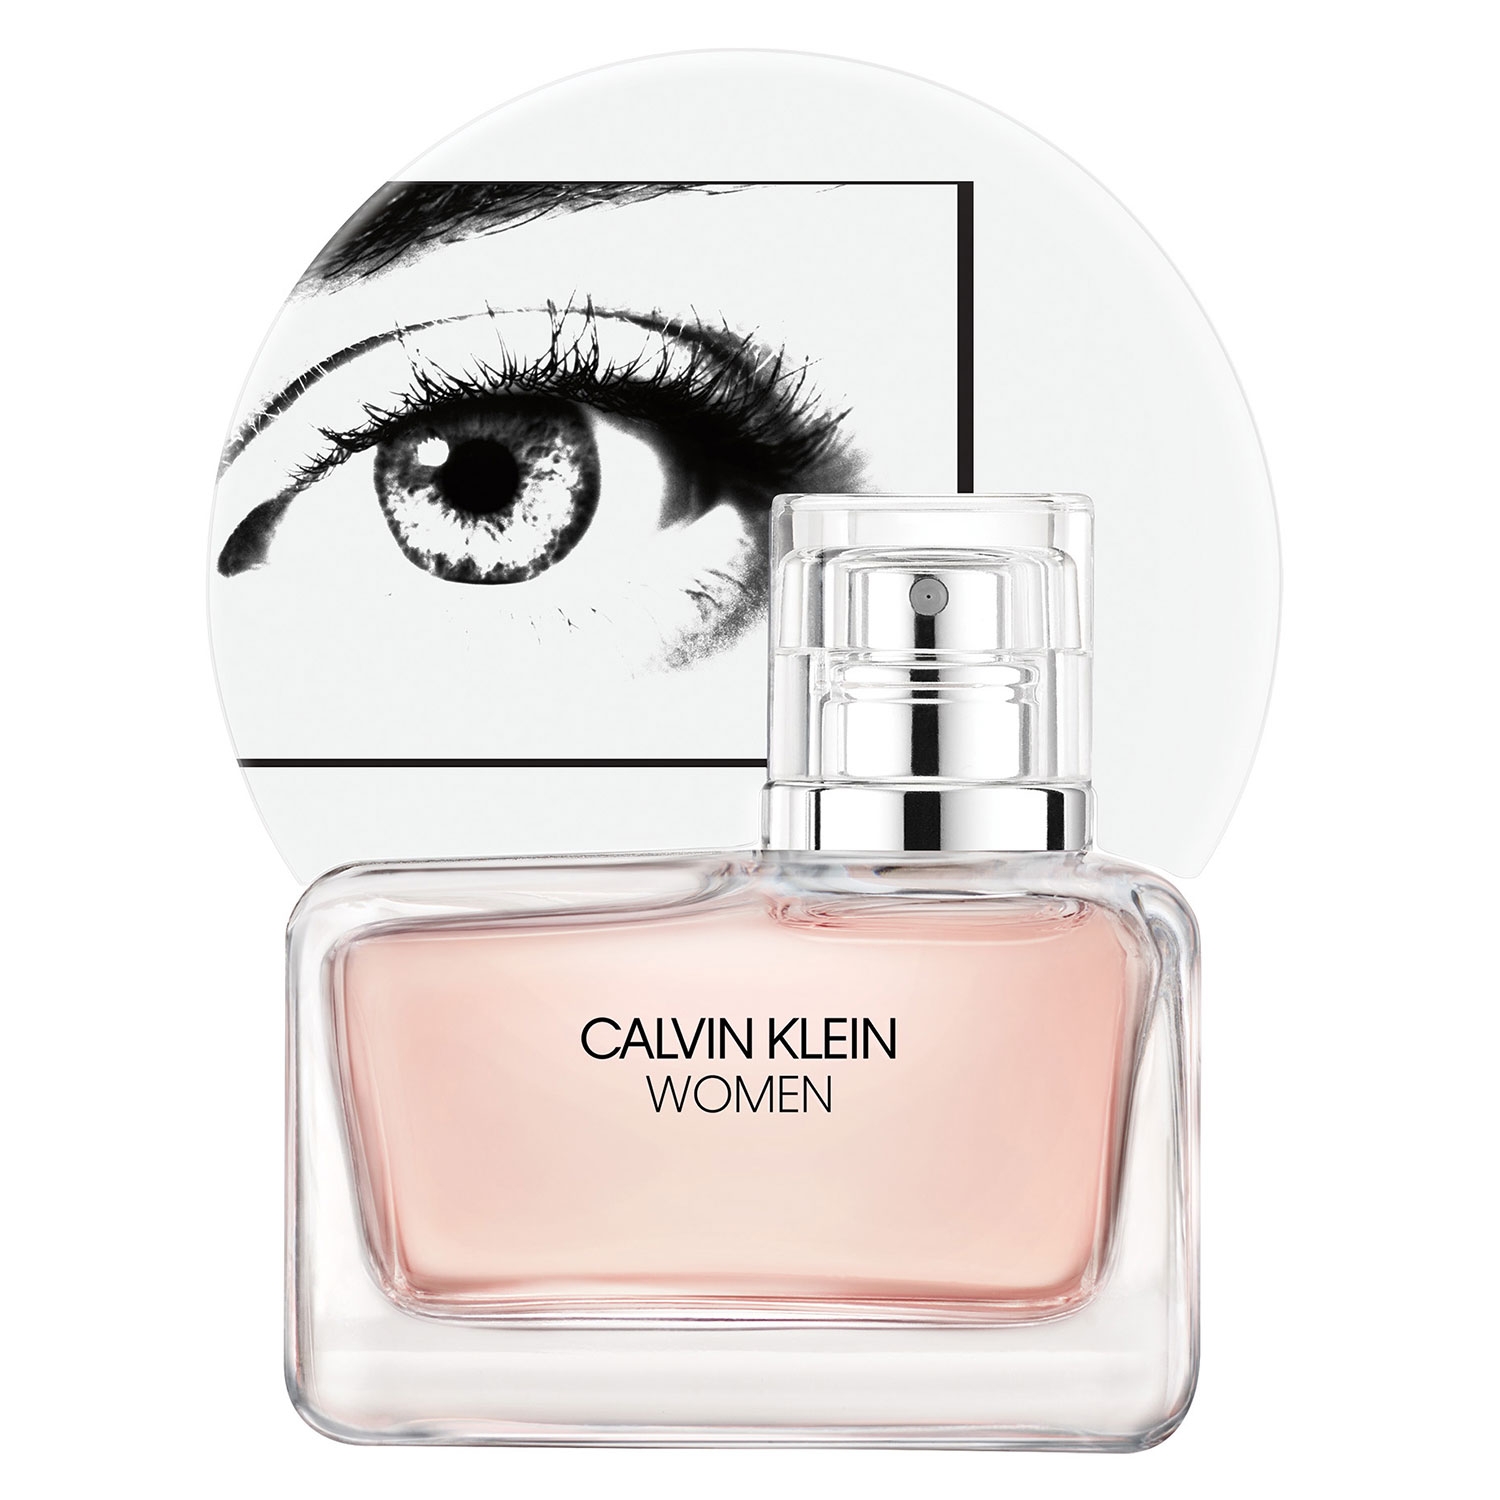 Product image from Calvin Klein Women - Eau de Parfum